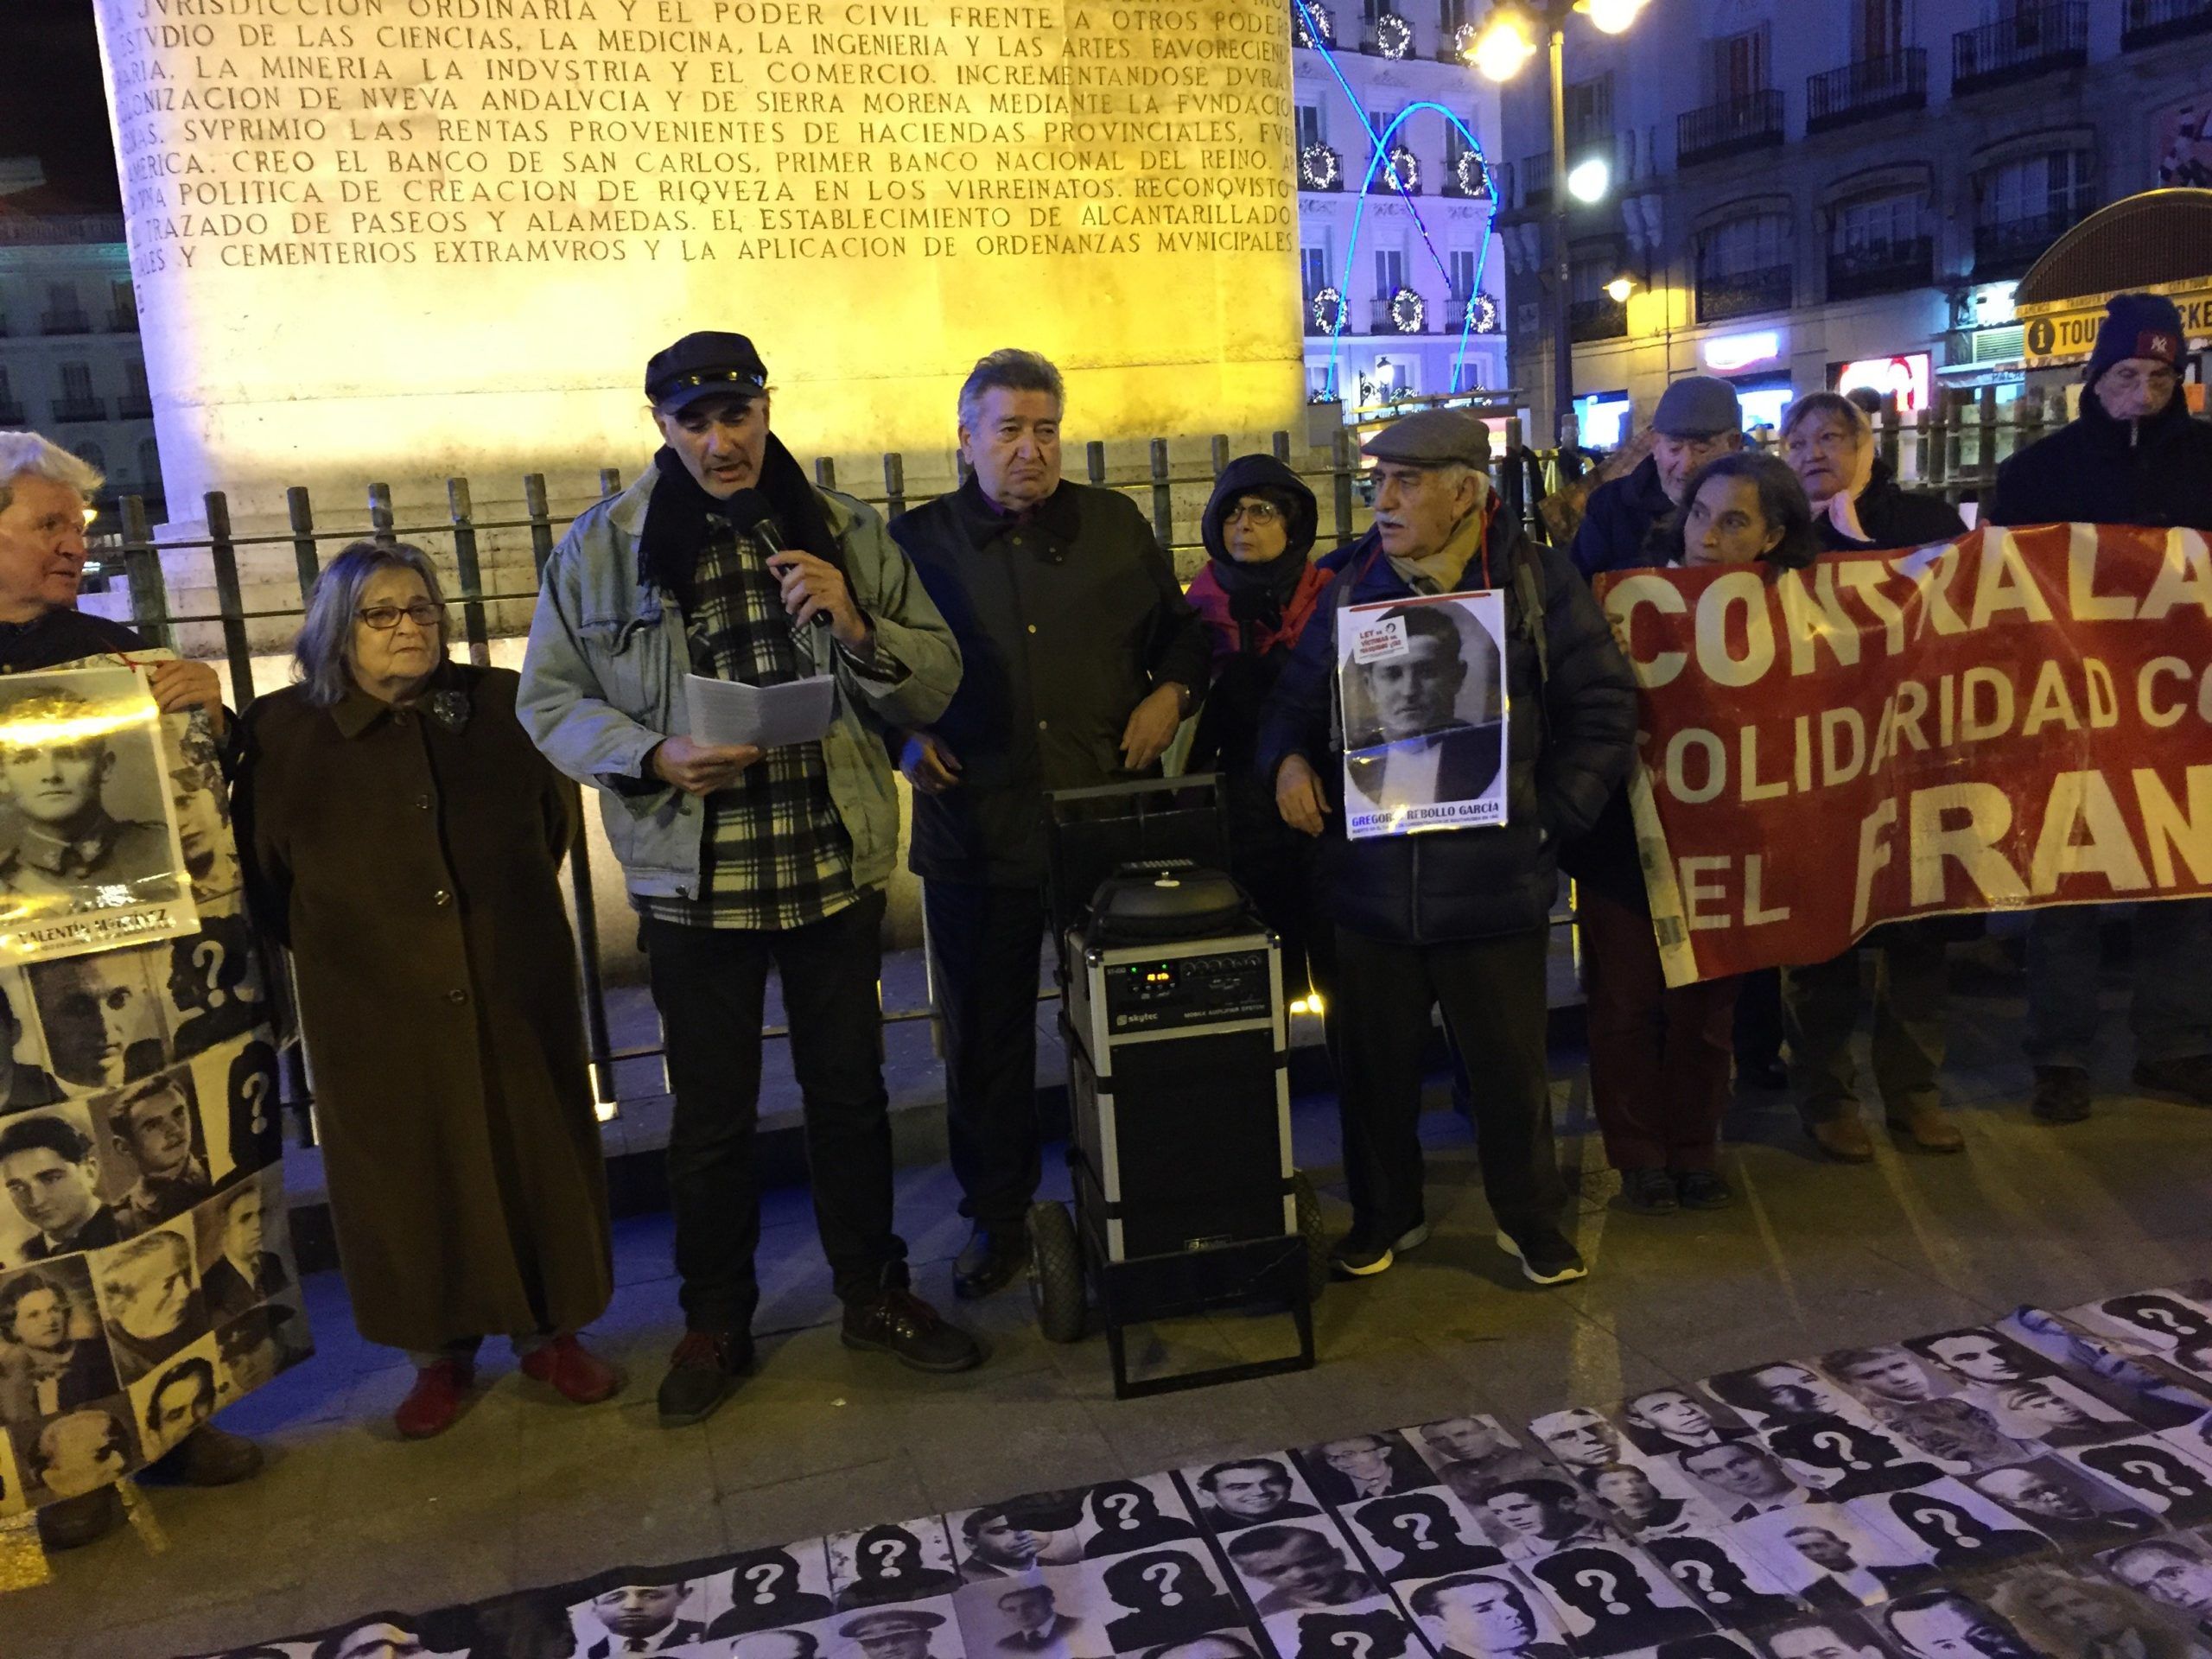 jeudi 5 décembre Juan lit la pétition adressée au maire de Madrid par notre association